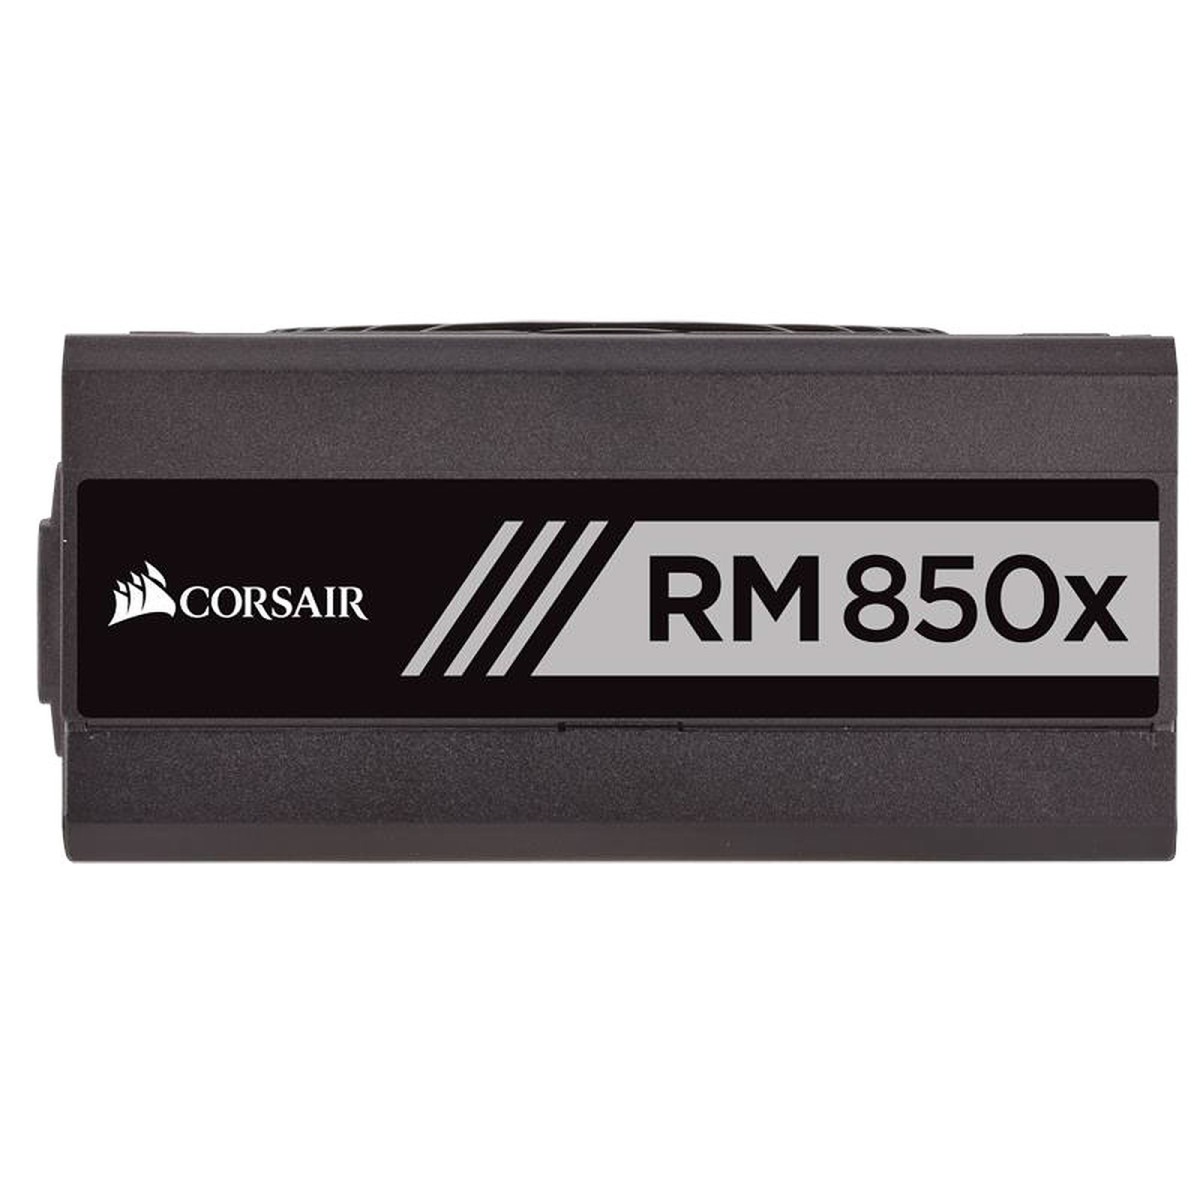 RM850x